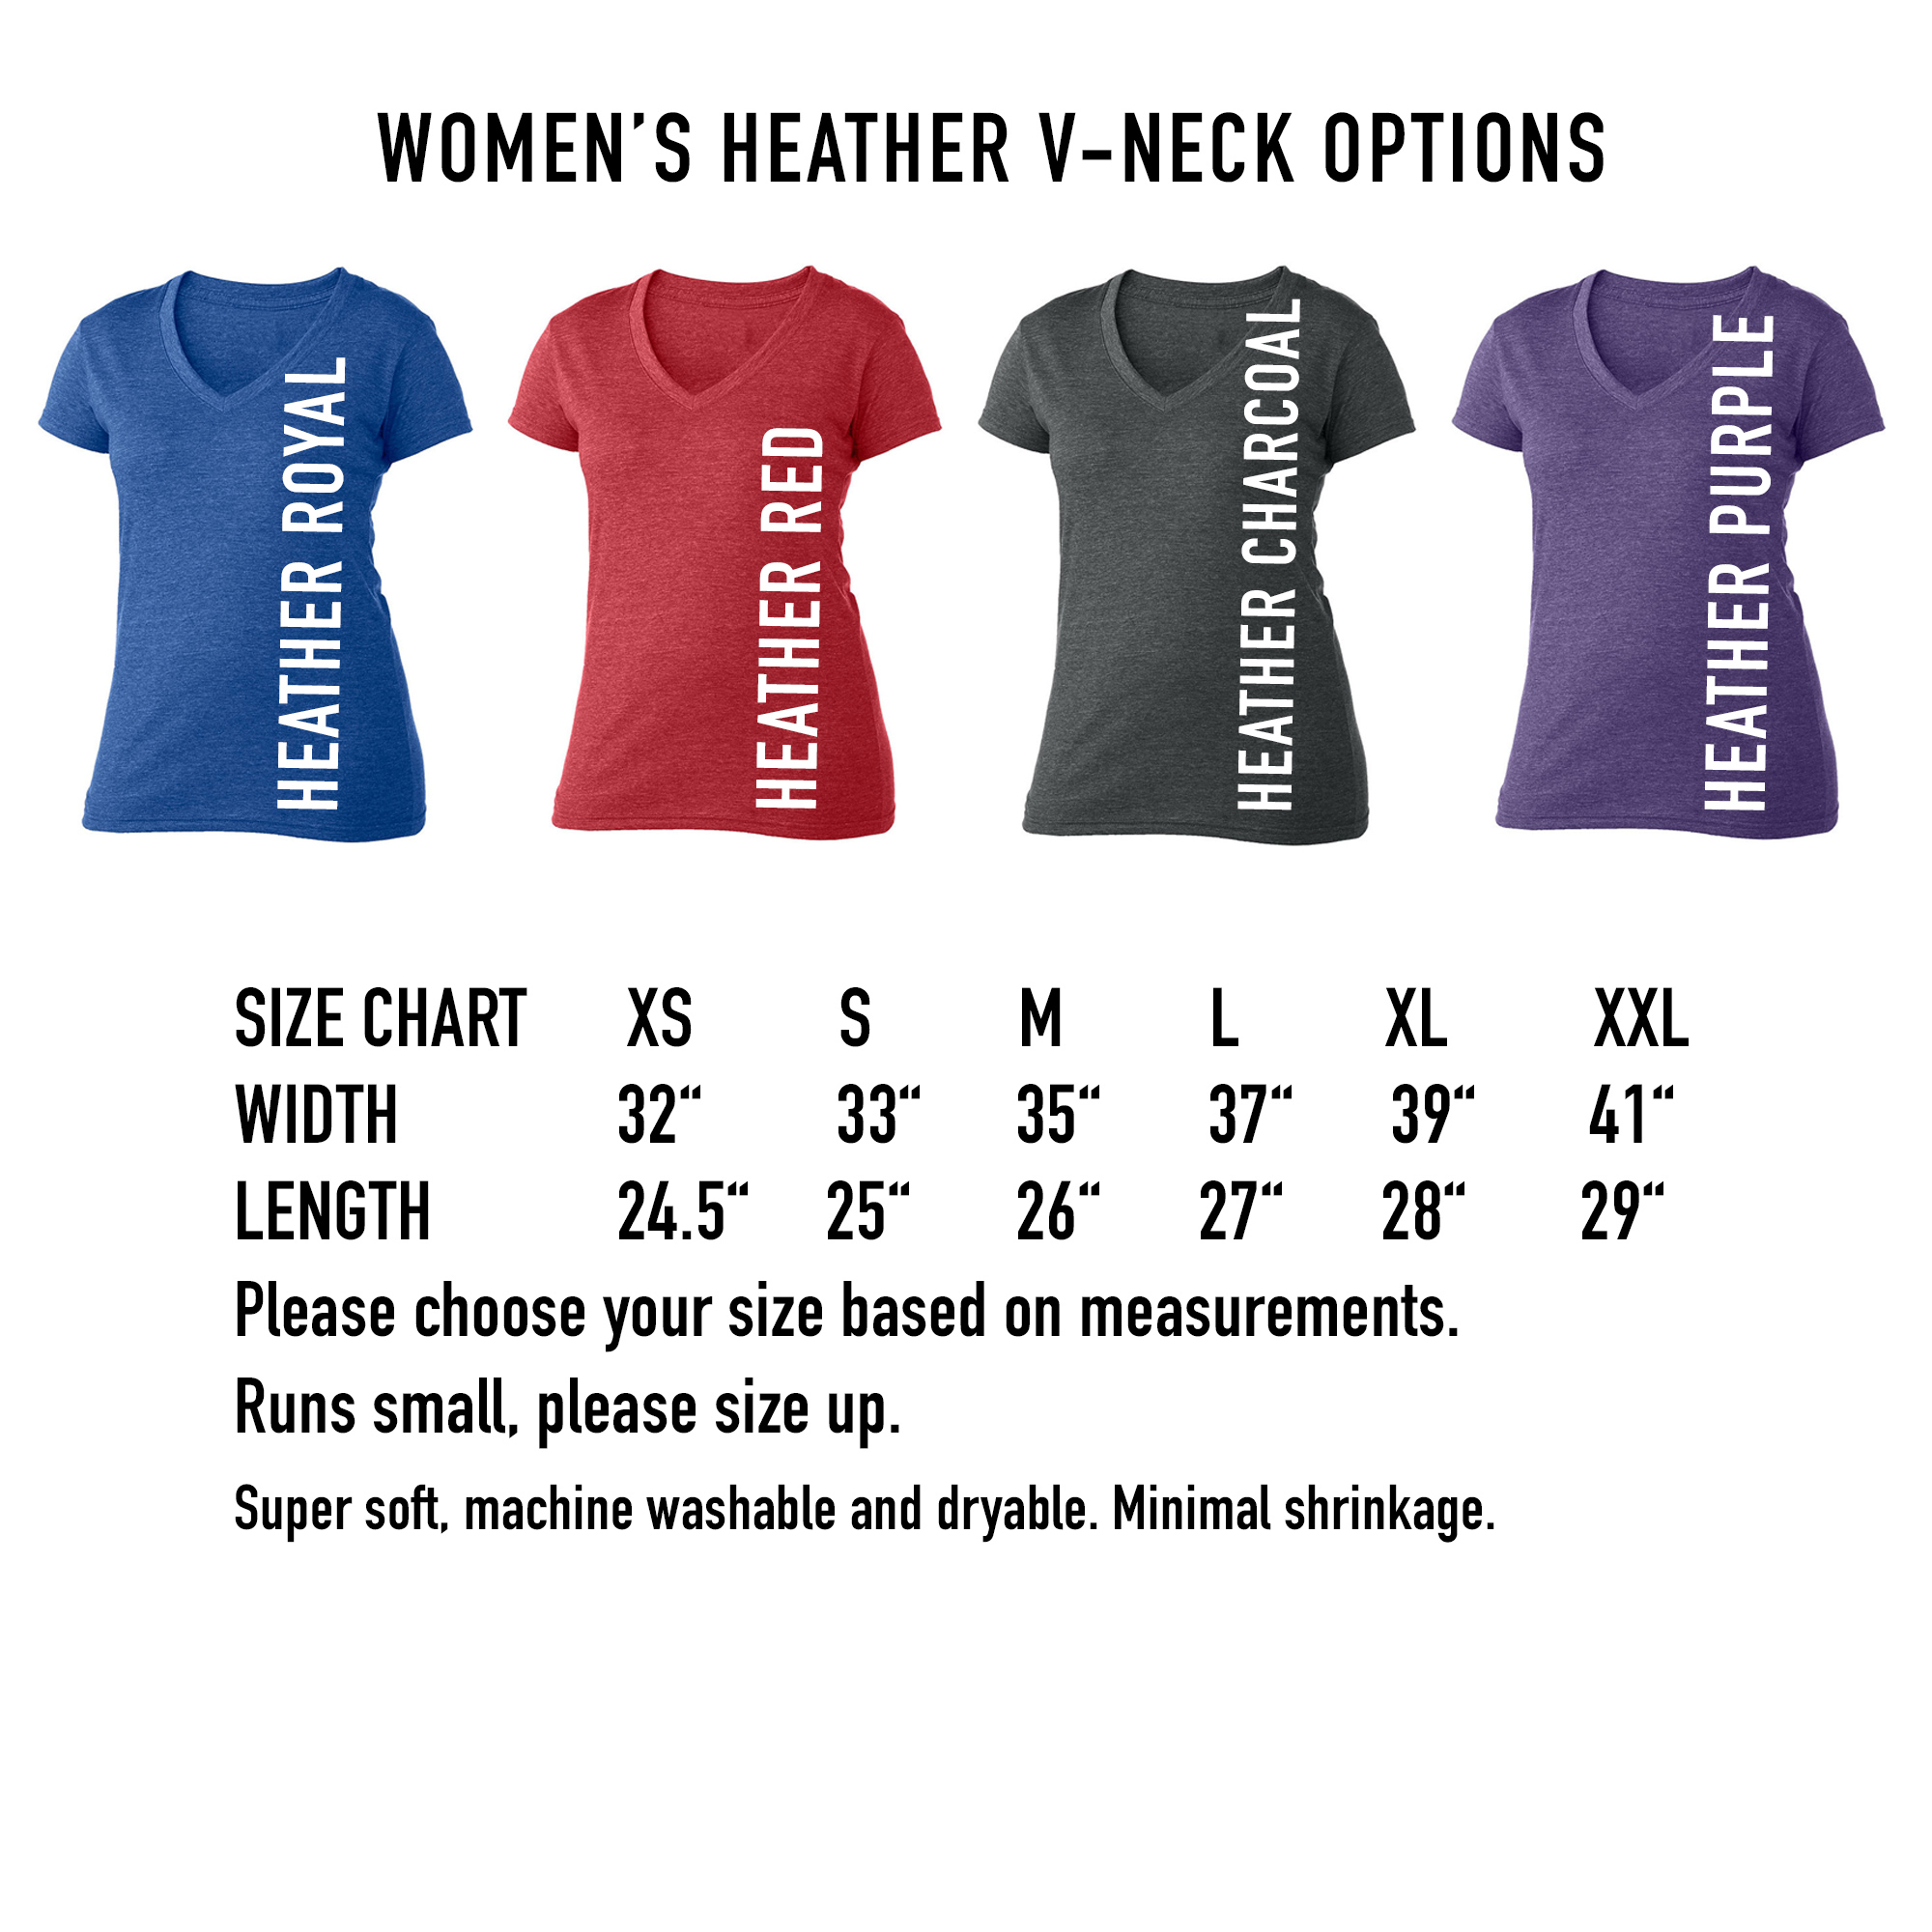 Ohio Girl women's v-neck